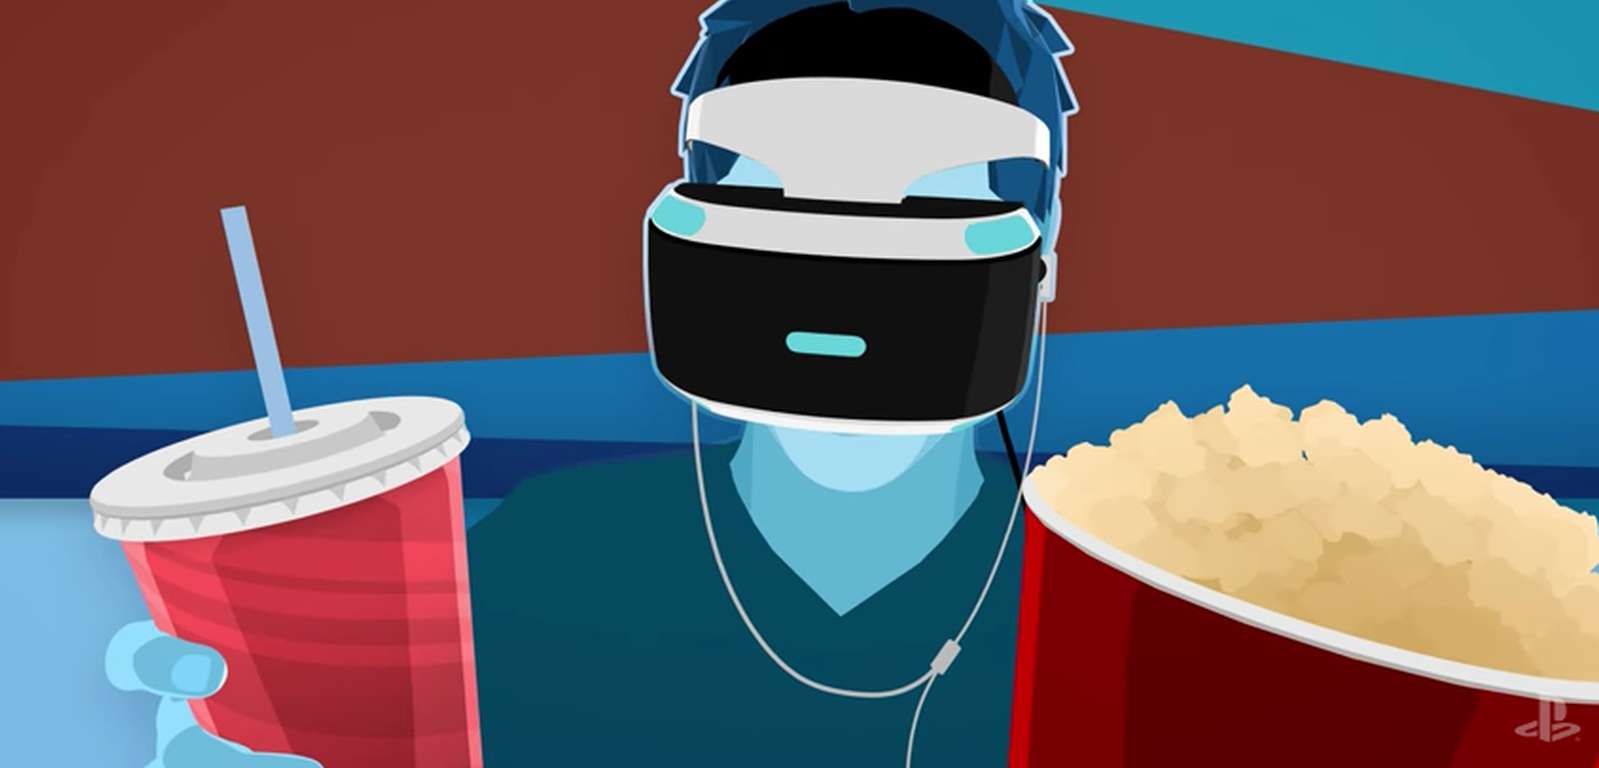 Aplikacja YouTube wreszcie ze wsparciem dla PlayStation VR